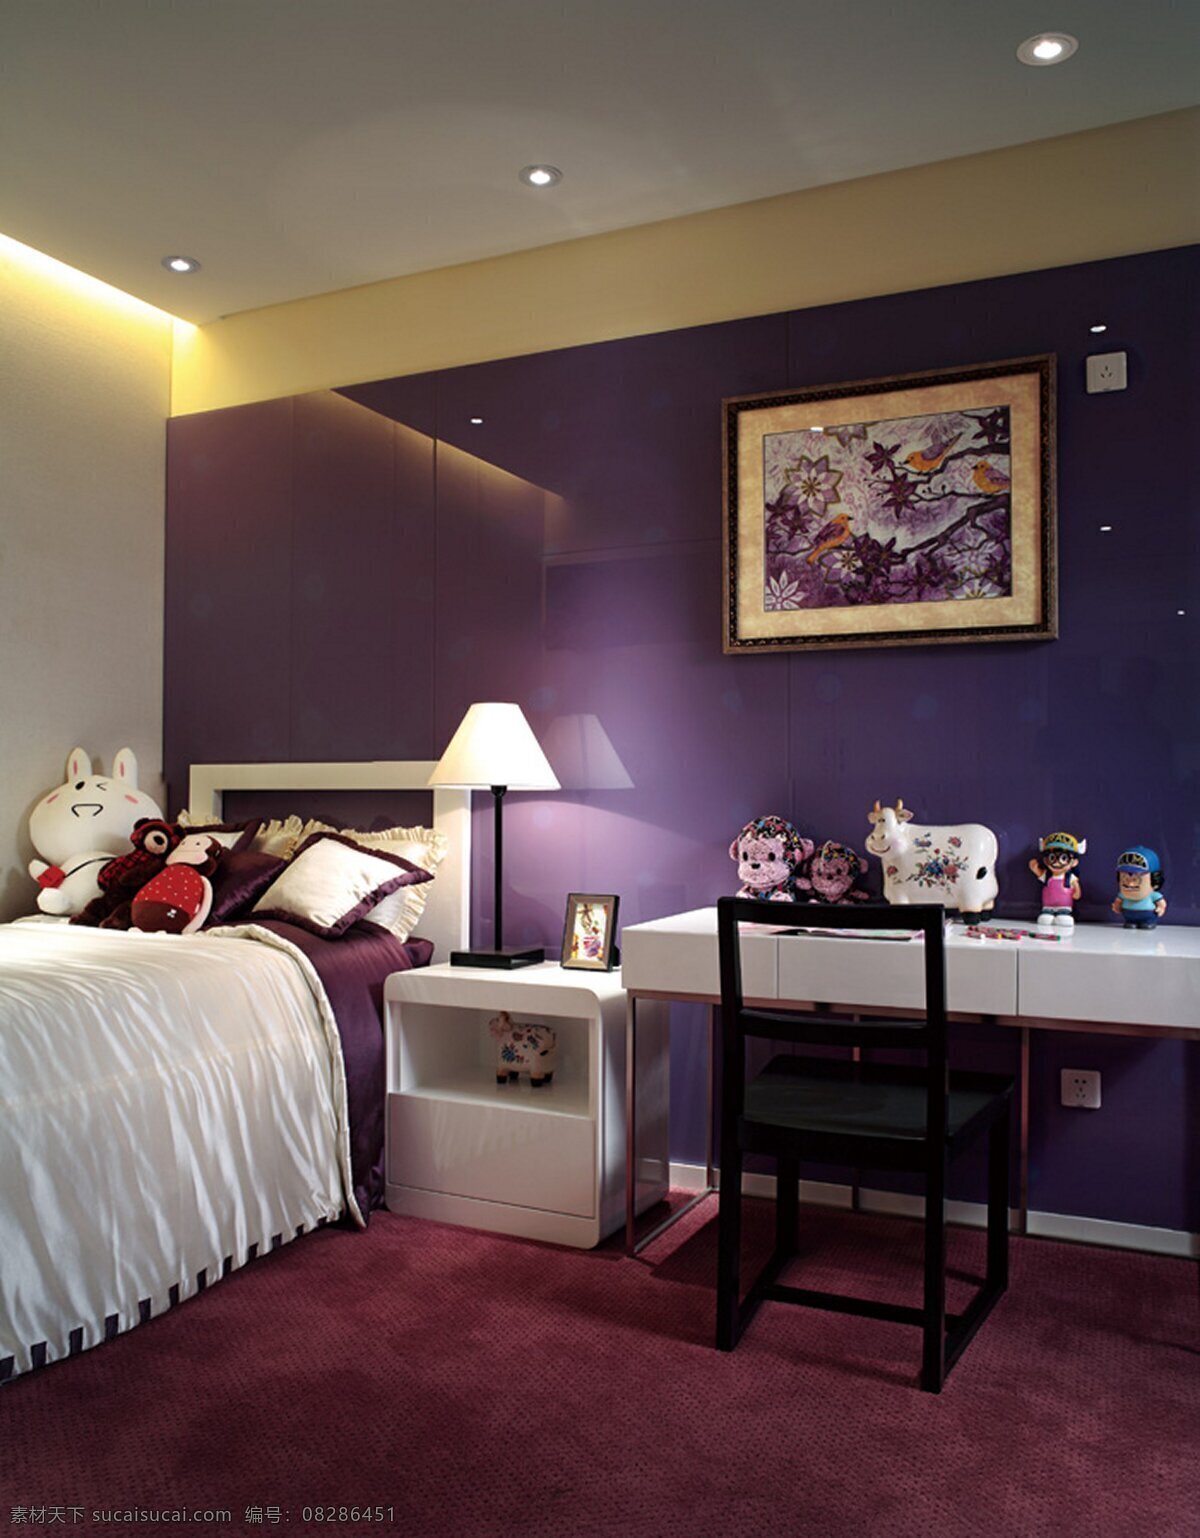 现代 简约 卧室 紫色 壁纸 效果图 室内 软装设计 家装效果图 装修设计 室内设计 时尚 装修实景图 家居 典雅 华丽 家居设计图